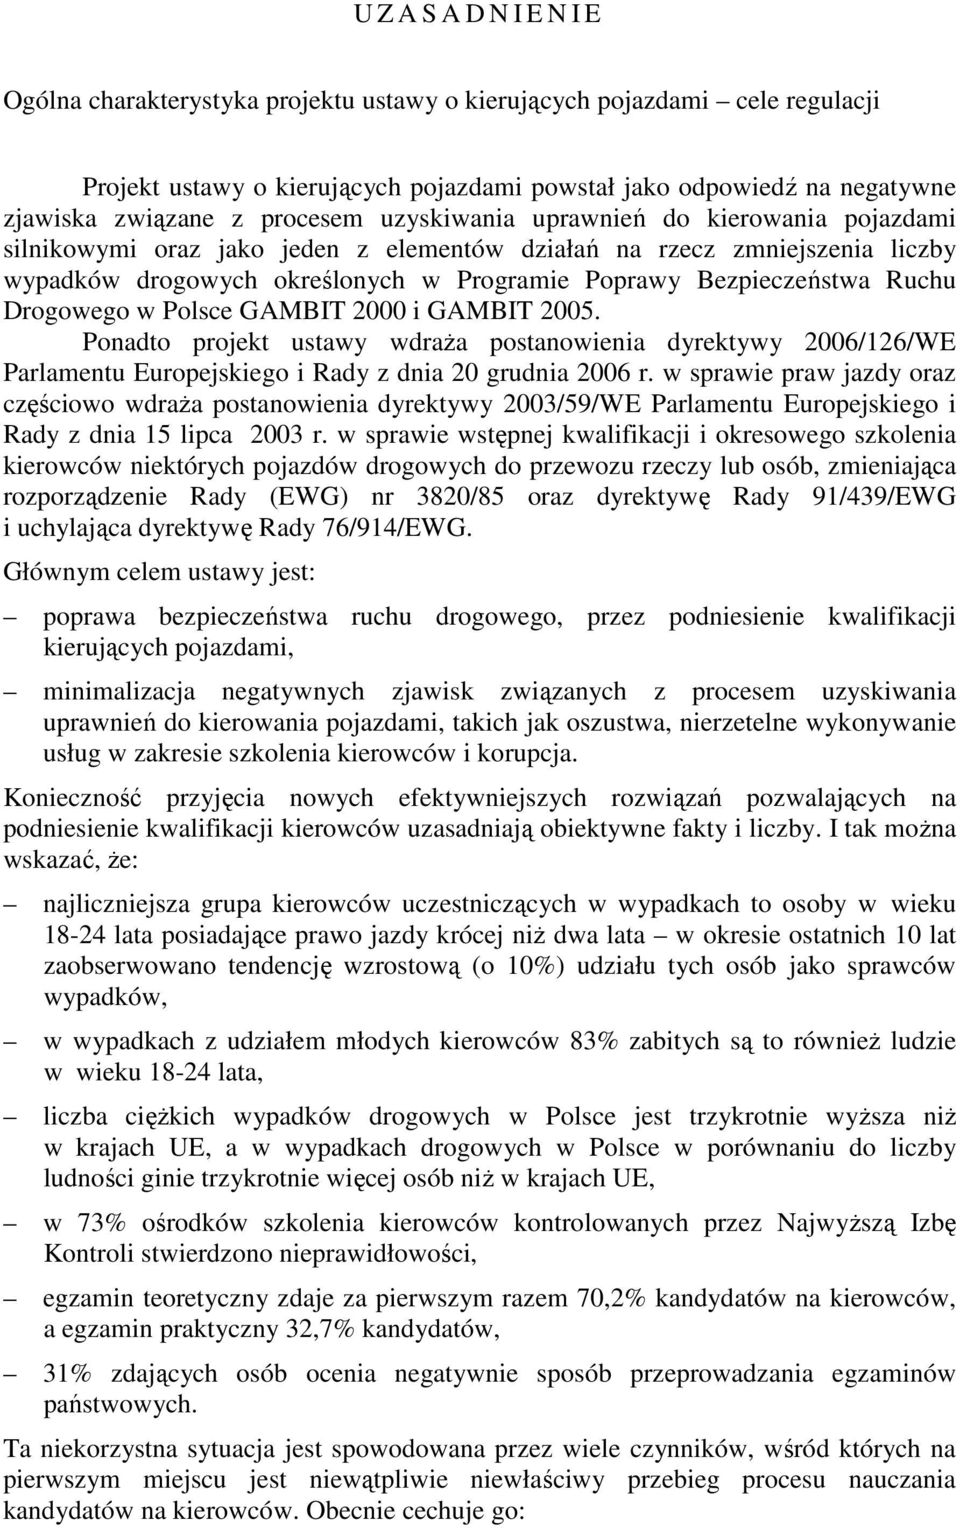 Ruchu Drogowego w Polsce GAMBIT 2000 i GAMBIT 2005 Ponadto projekt ustawy wdraża postanowienia dyrektywy 2006/126/WE Parlamentu Europejskiego i Rady z dnia 20 grudnia 2006 r w sprawie praw jazdy oraz